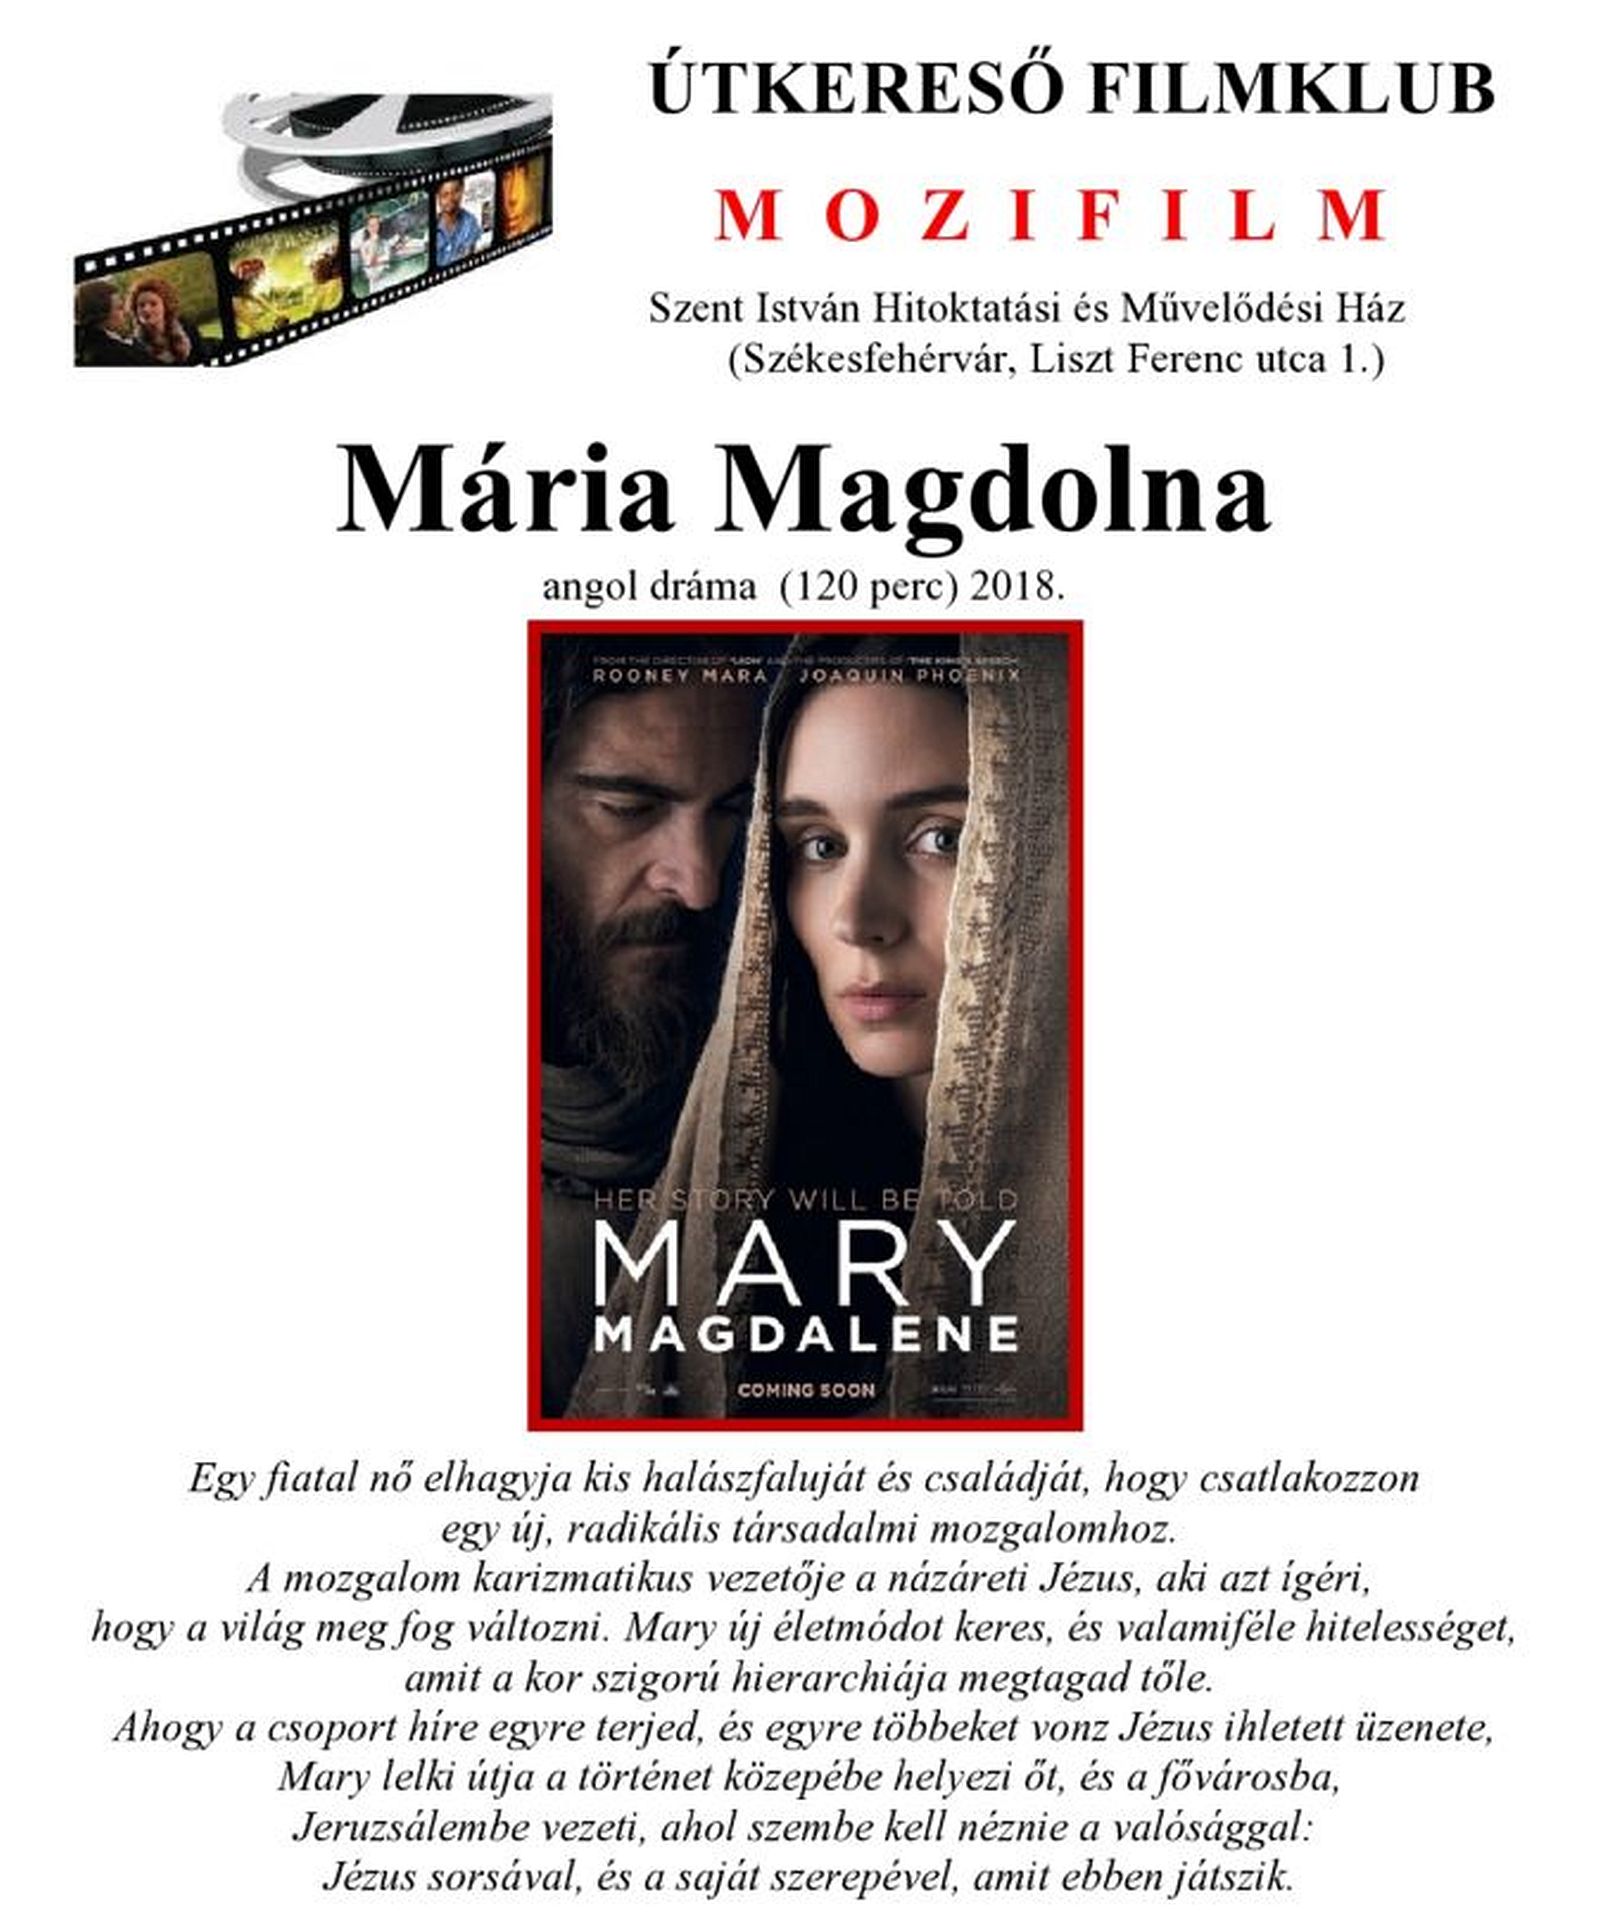 Mária Magdolna - az Útkereső Filmklub vetítése a Szent István Művelődési Házban